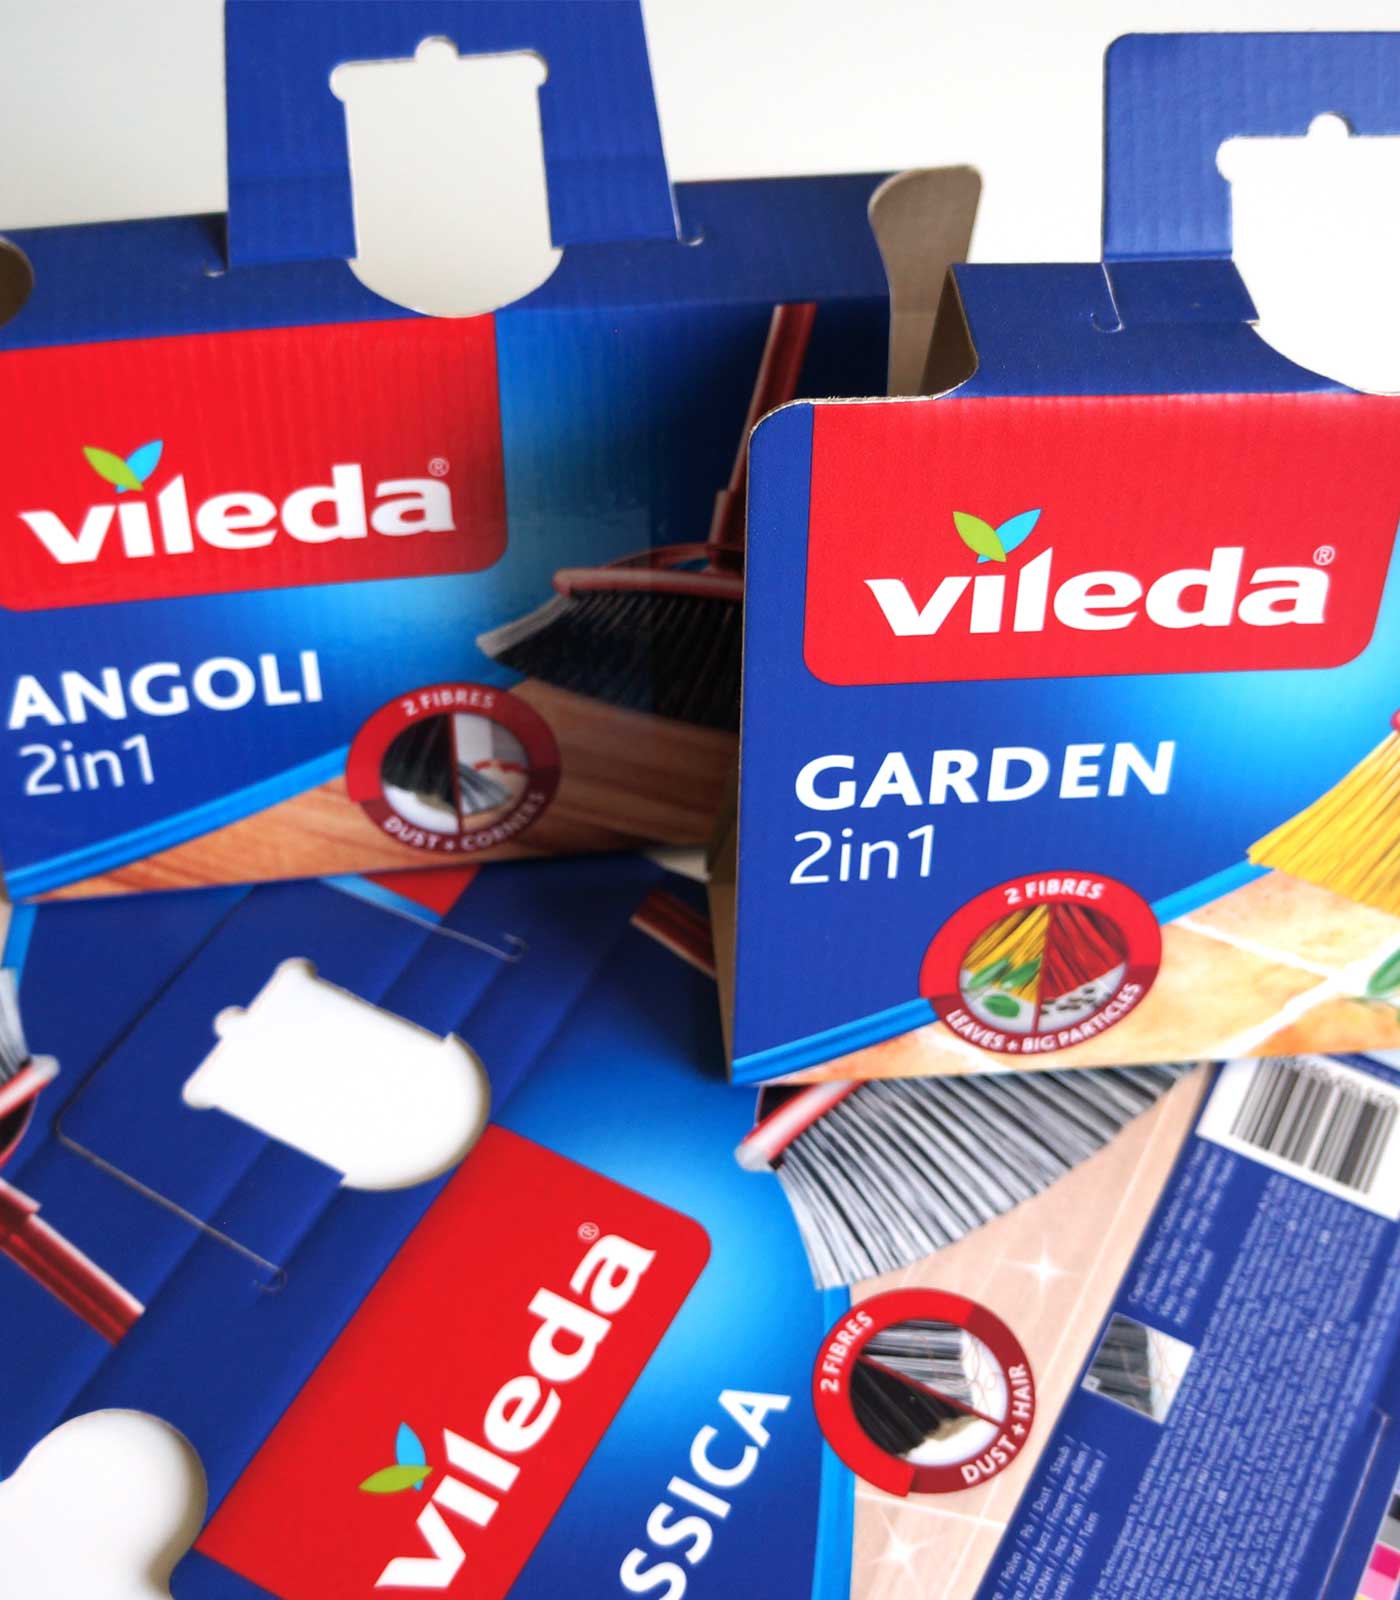 Produktverpackungen für Vileda